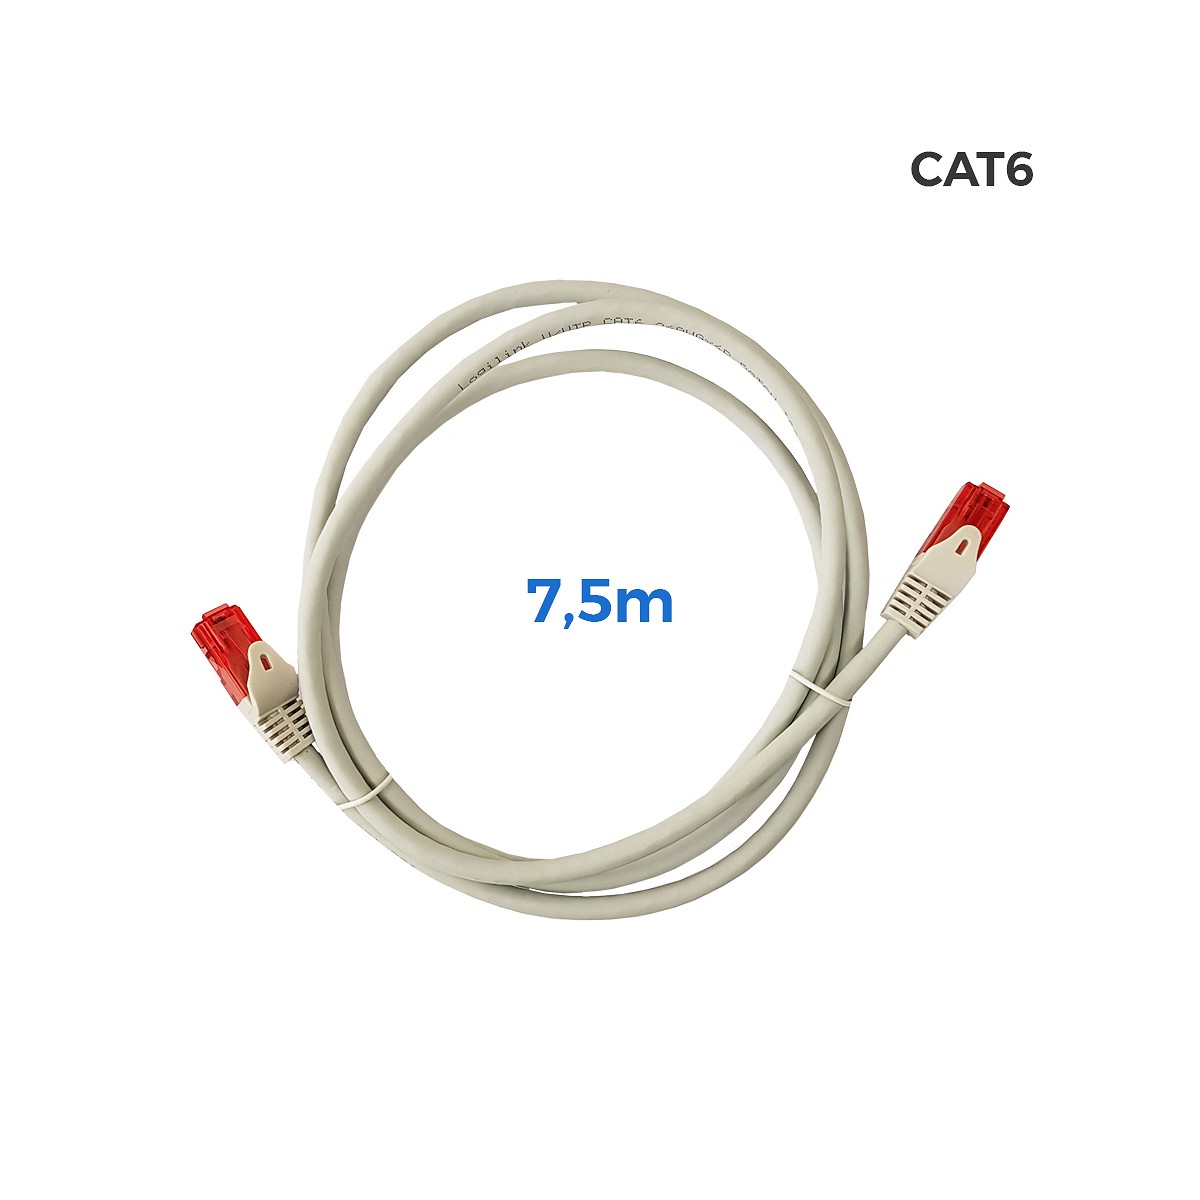 Cable utp cat.6 latiguillo rj45 cobre lszh gris 7,5m